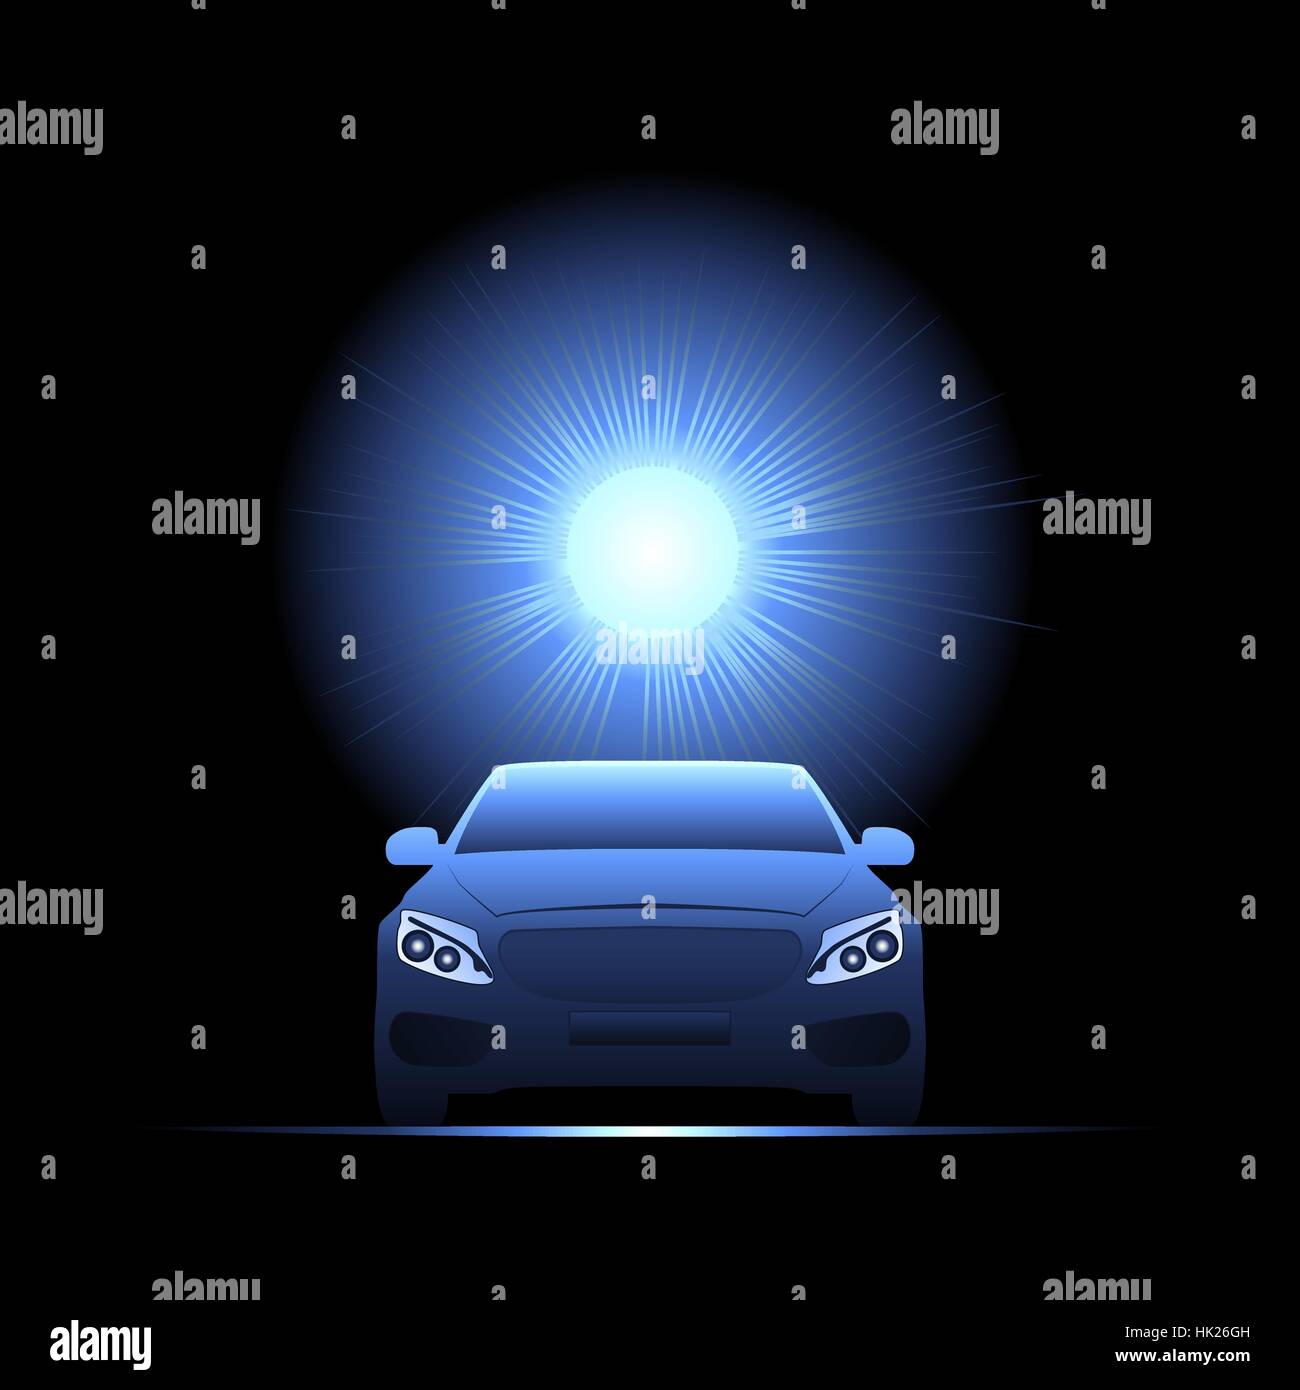 Passenger car illuminated by bright light. Vector illustration. Stock Vector